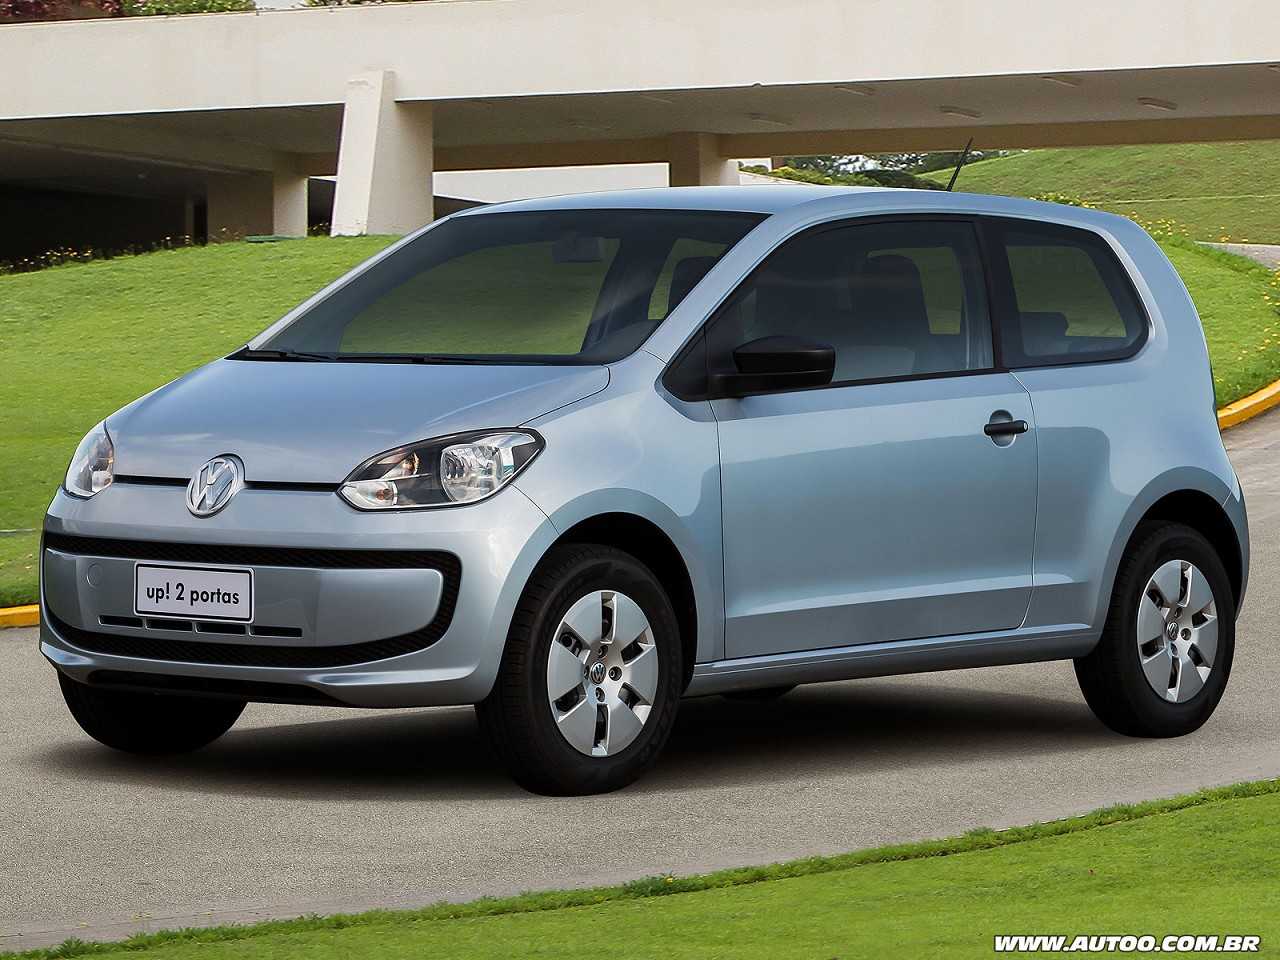 Seminovos até R$ 30.000: VW up! ou Toyota Etios?